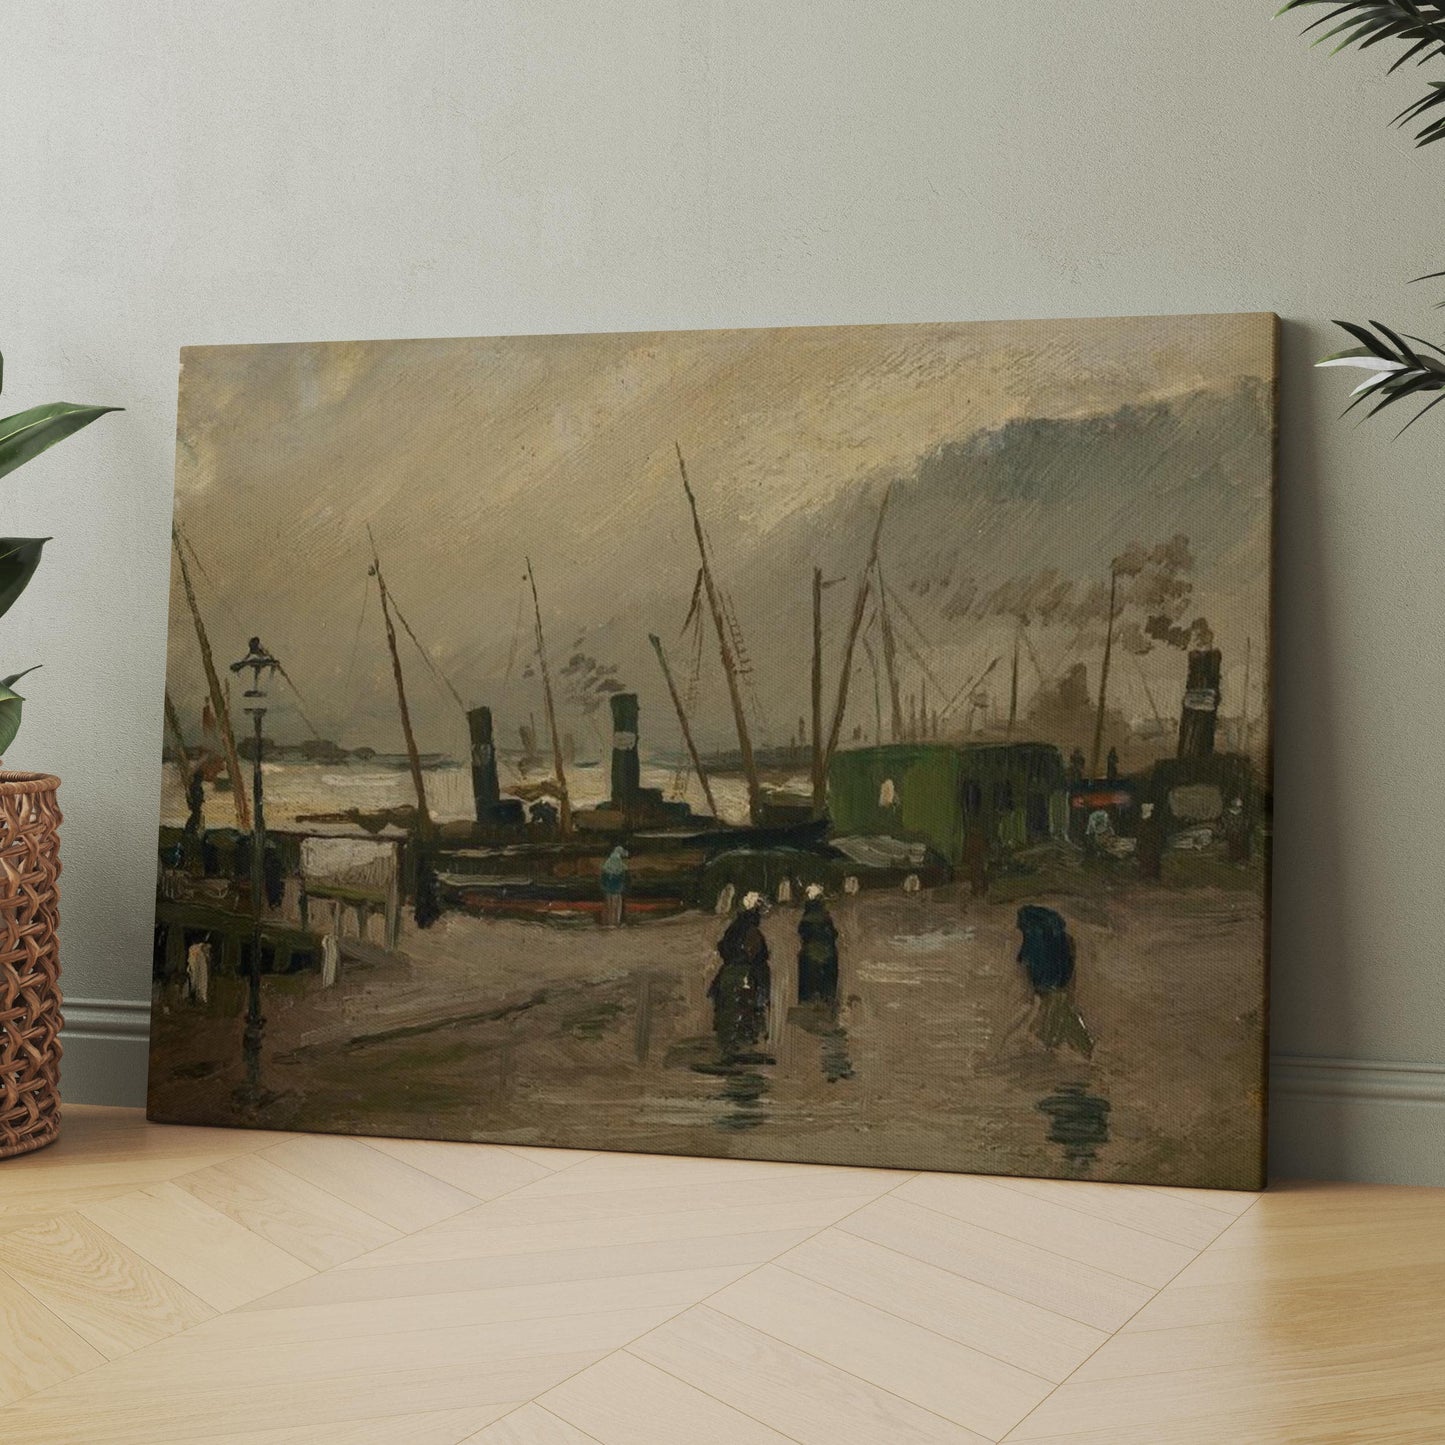 The De Ruijterkade in Amsterdam (1885) by Van Gogh